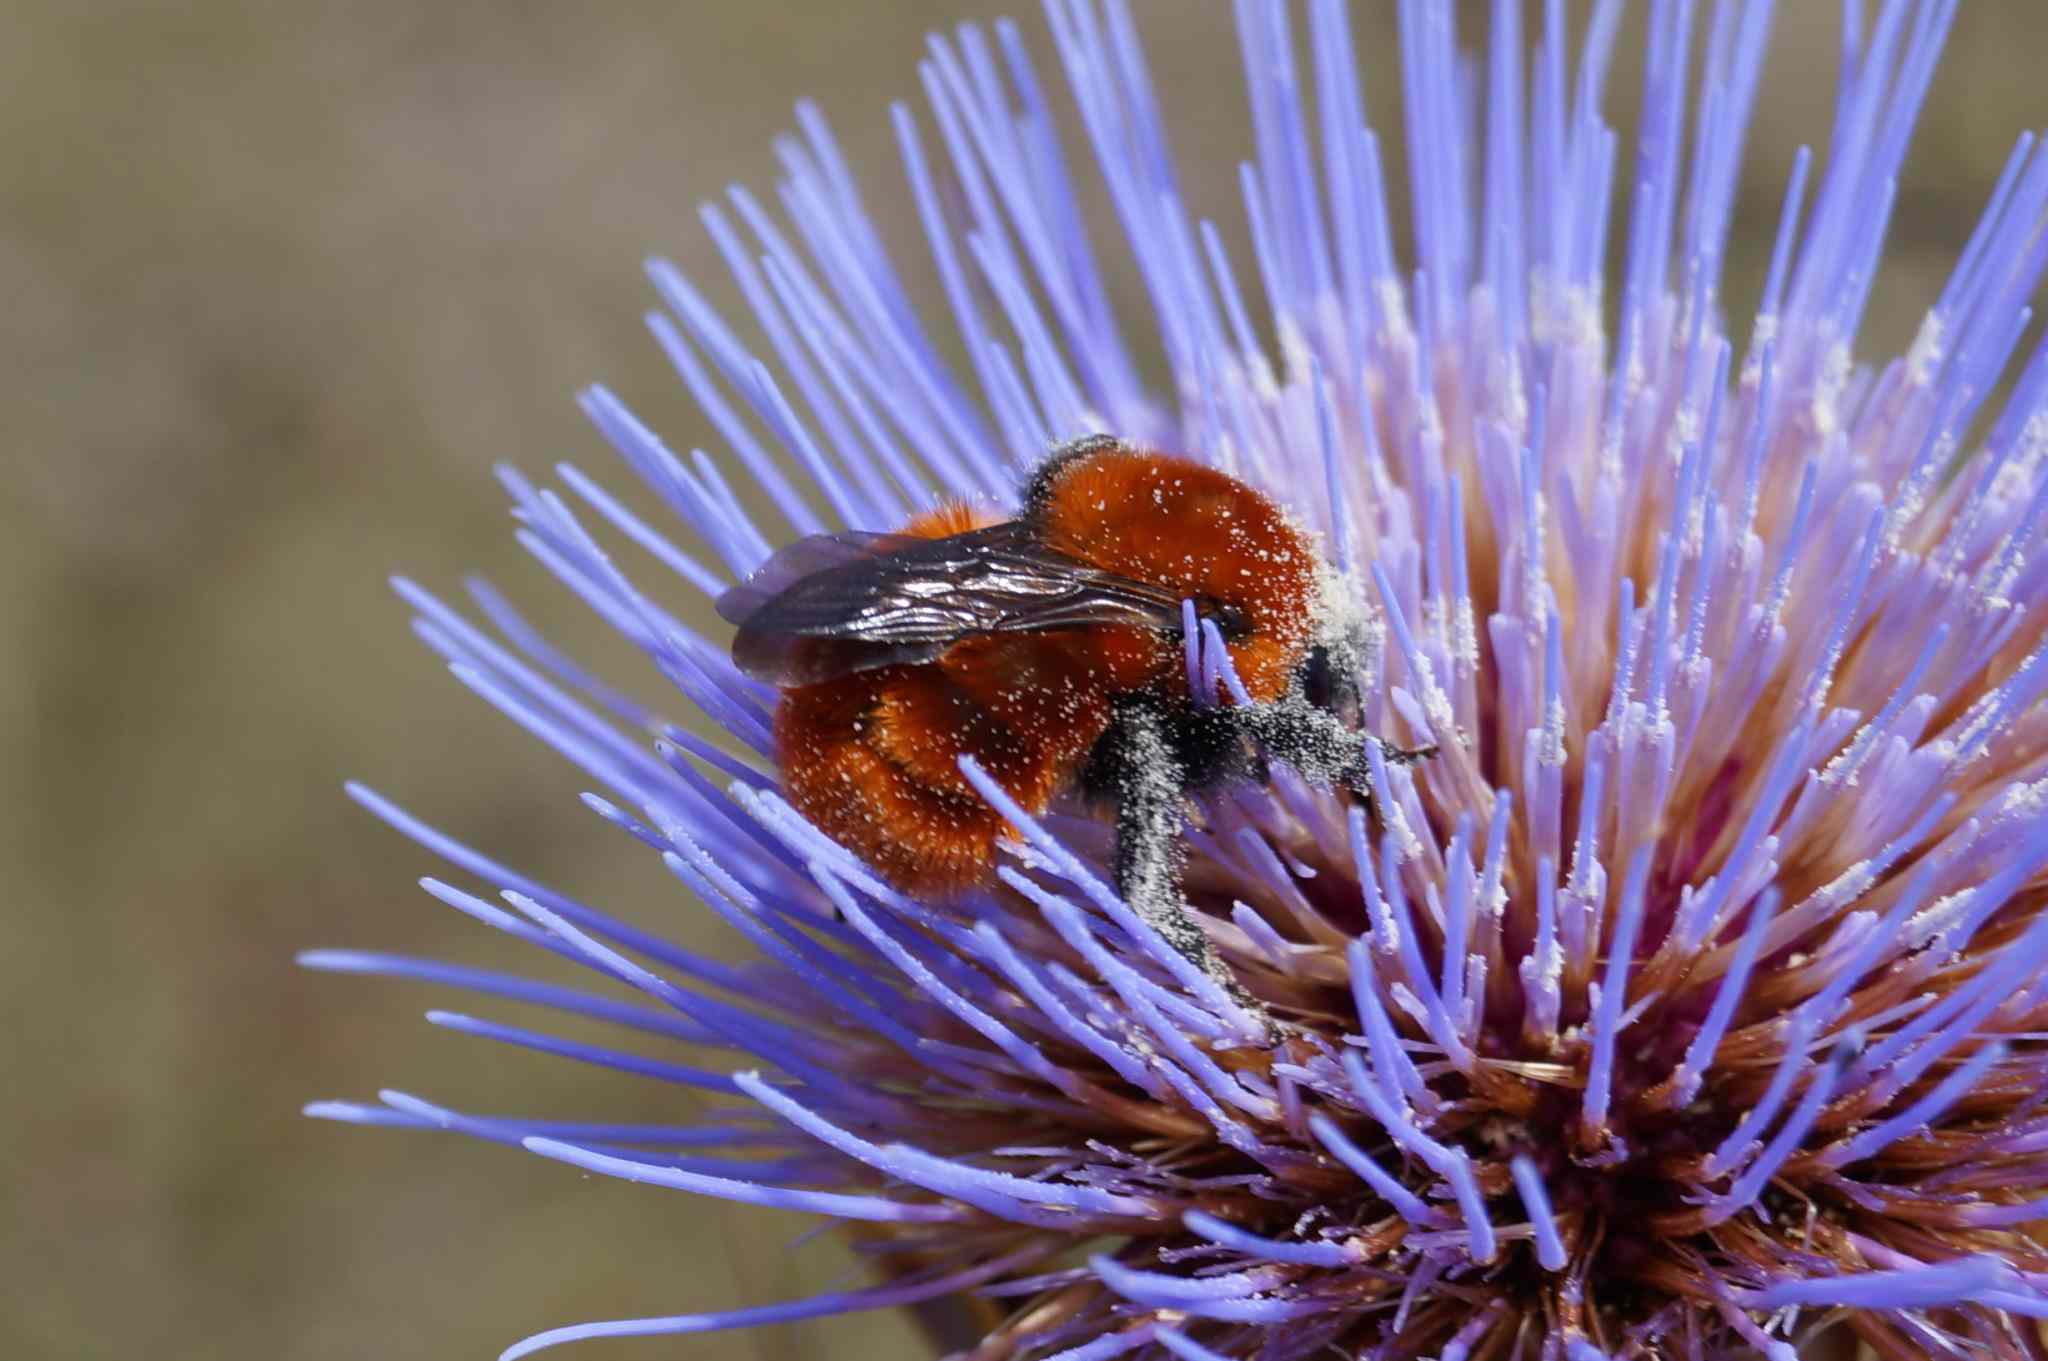 Bombus dahlbomii, originario de Sudamérica, es la especie de abejorro más grande del mundo